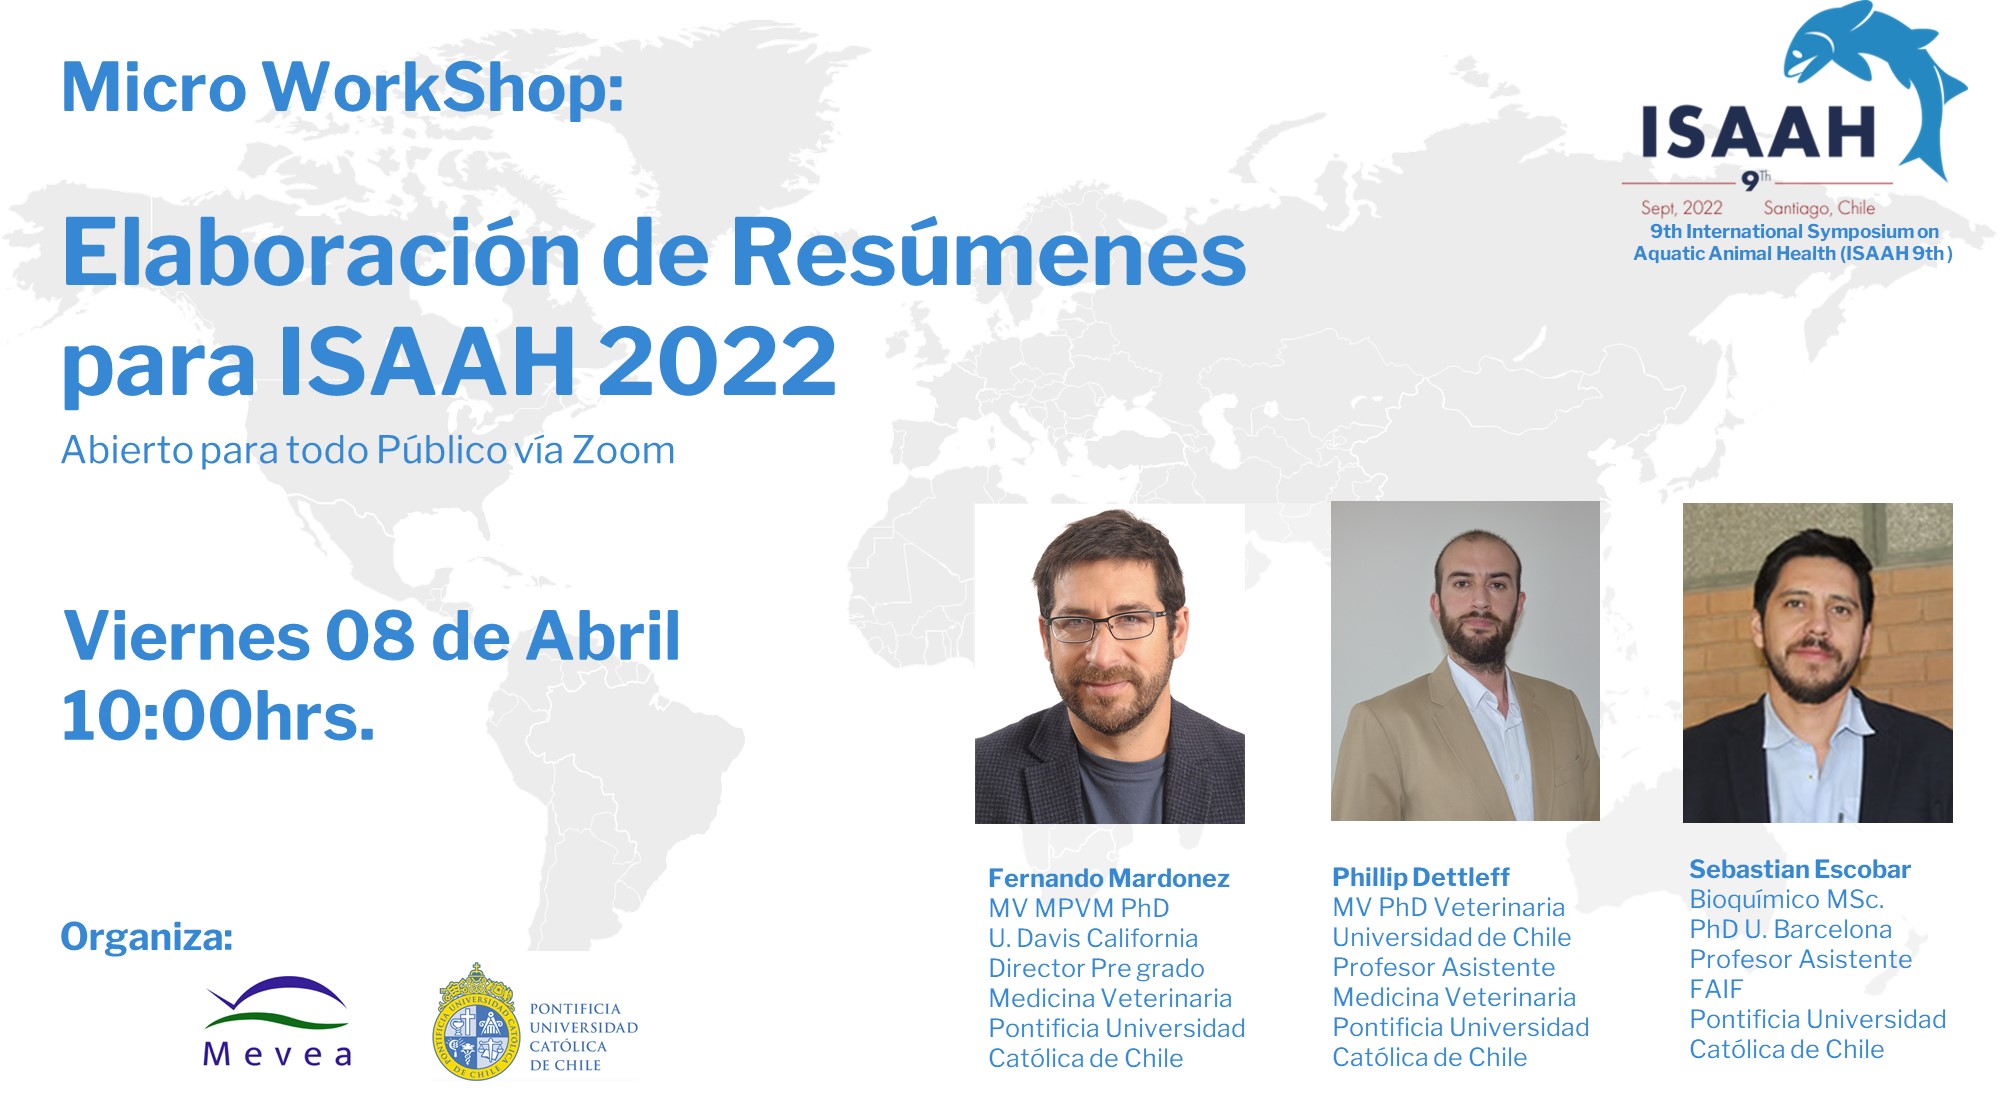 Veterinarios de la acuicultura invitan a workshop “Elaboración de resúmenes para ISAAH 2022”